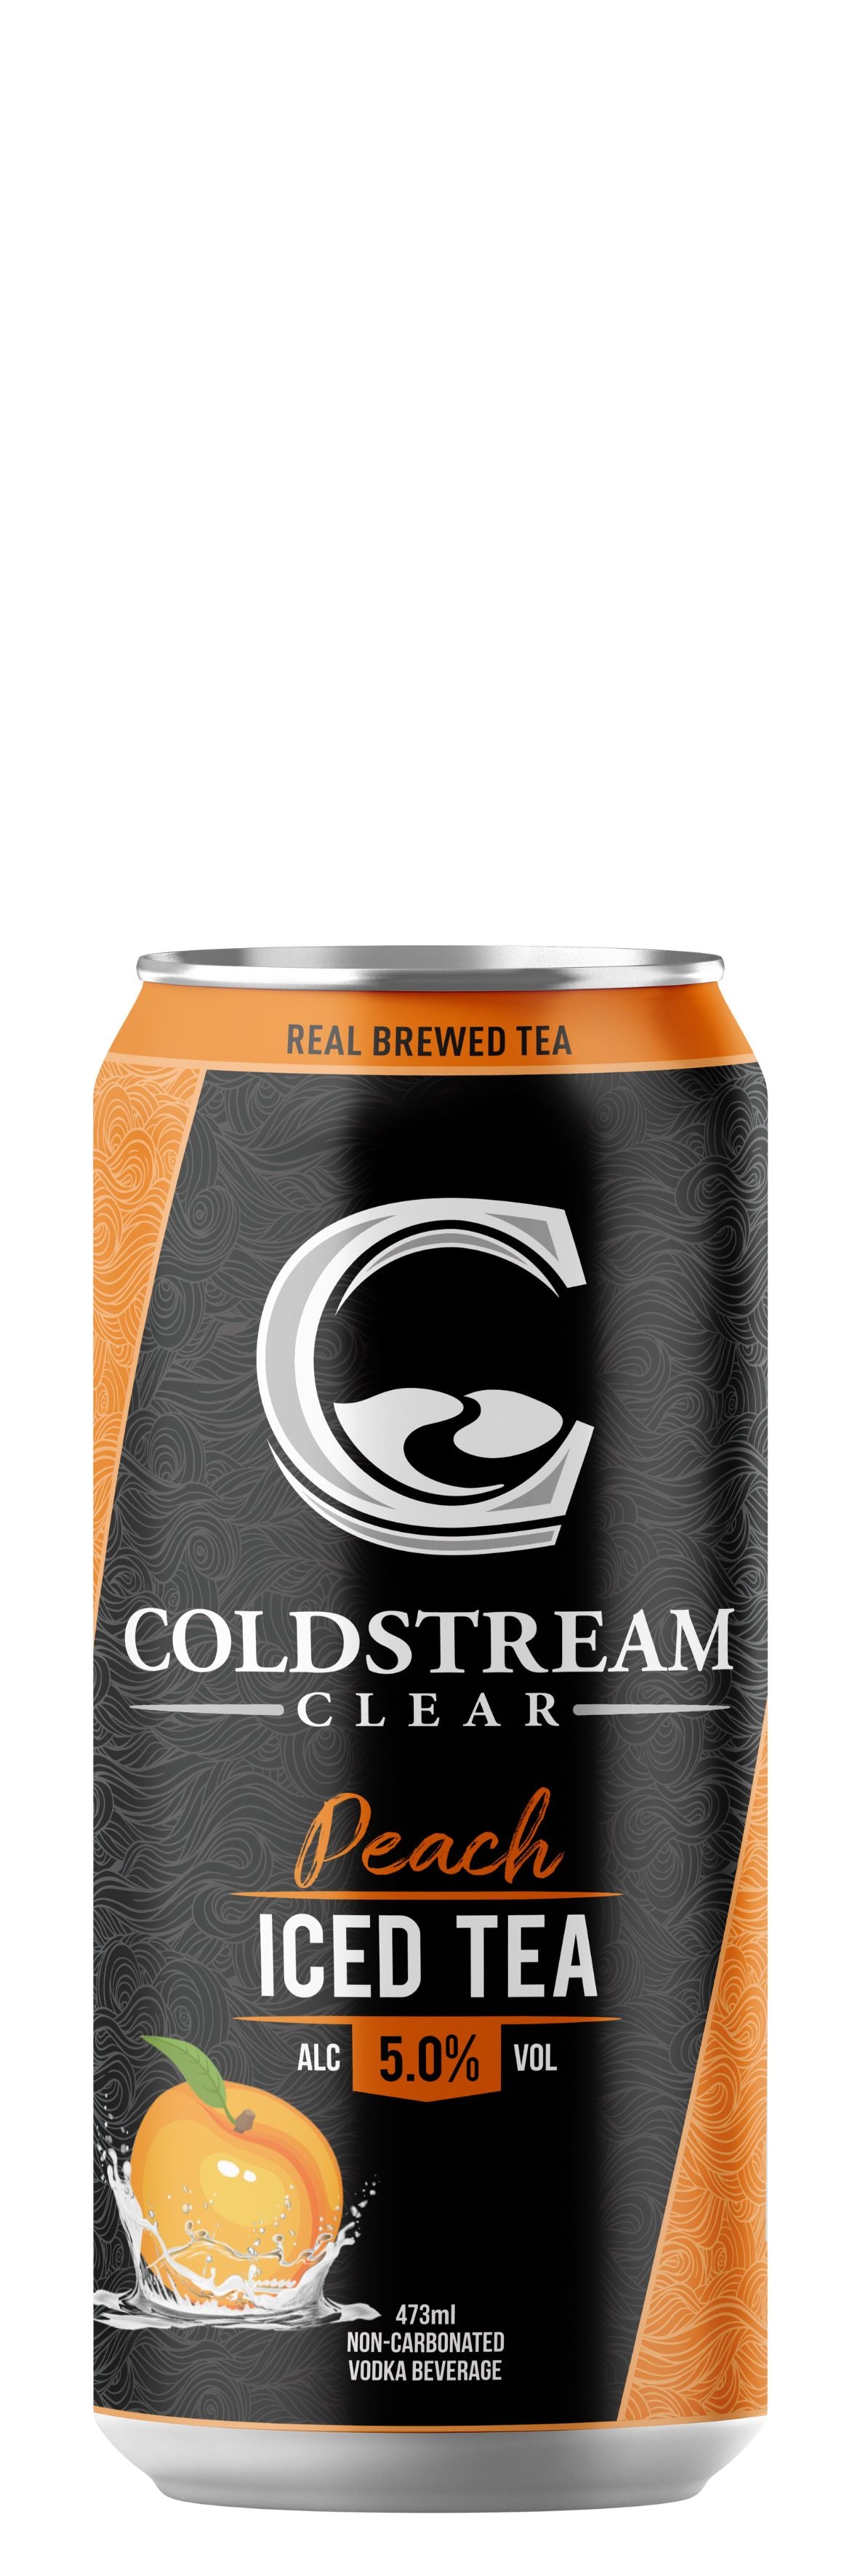 Coldstream Peach Iced Tea 473ml